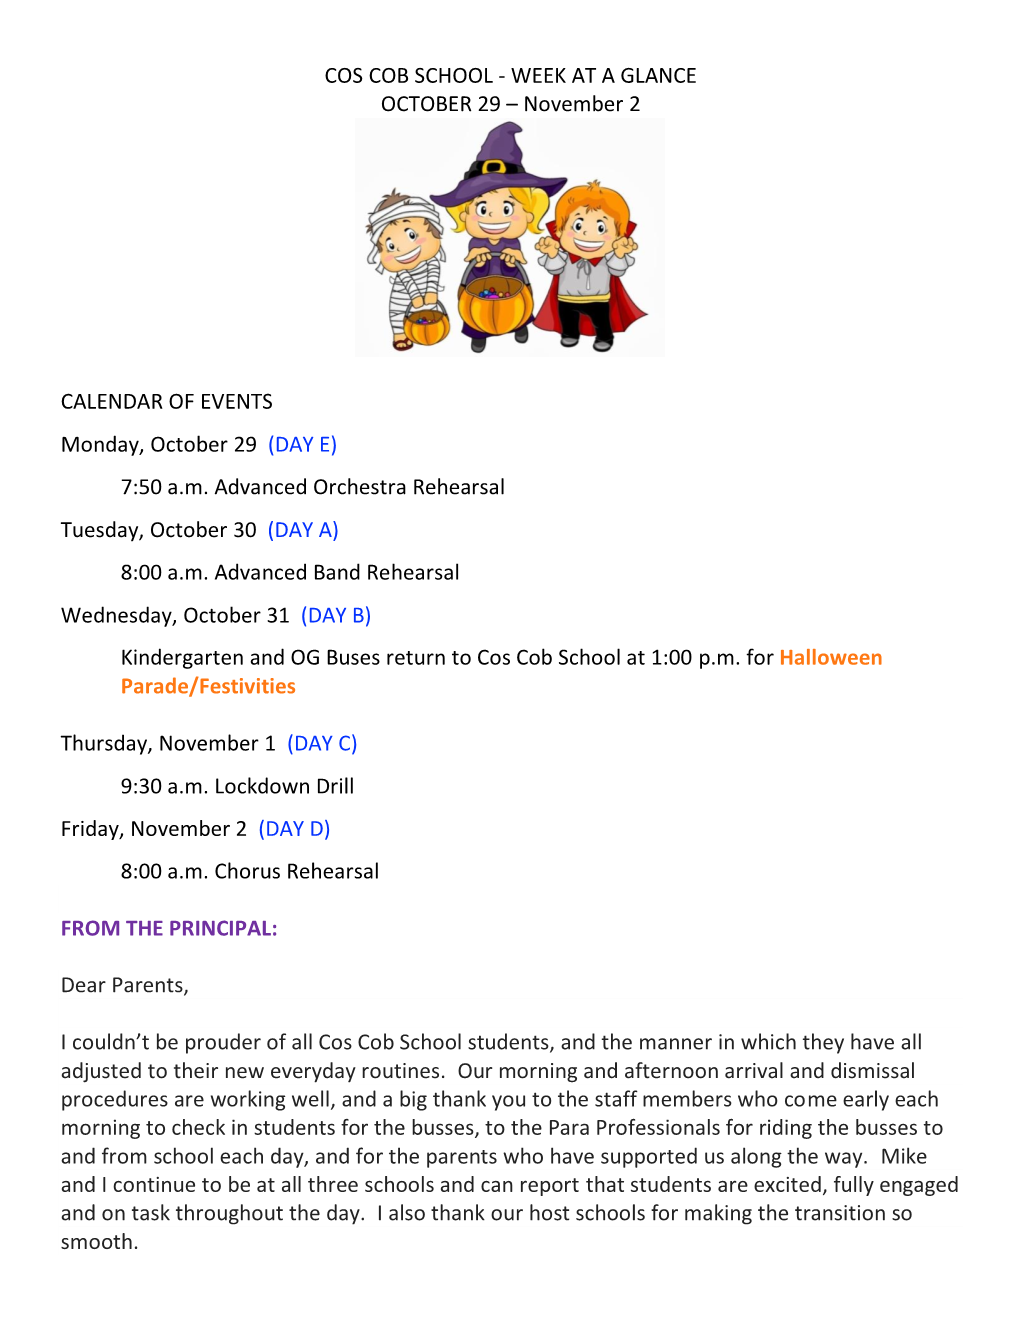 COS COB SCHOOL - WEEK at a GLANCE OCTOBER 29 – November 2